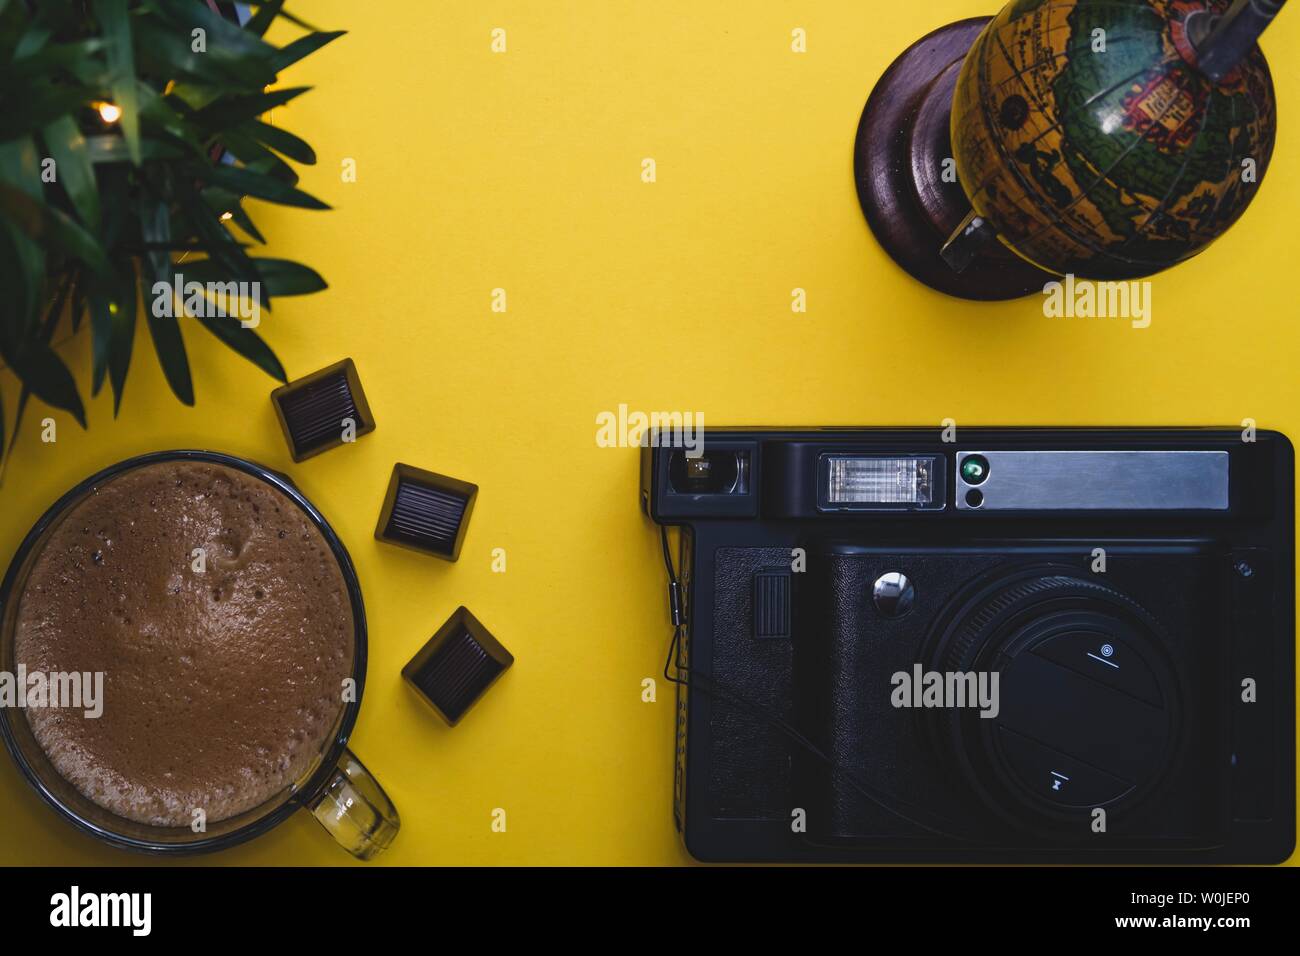 Tazza da caffè globe foto sfondo giallo verde tastiera portatile fotocamera istantanea carte spazio libero piante cioccolato Foto Stock